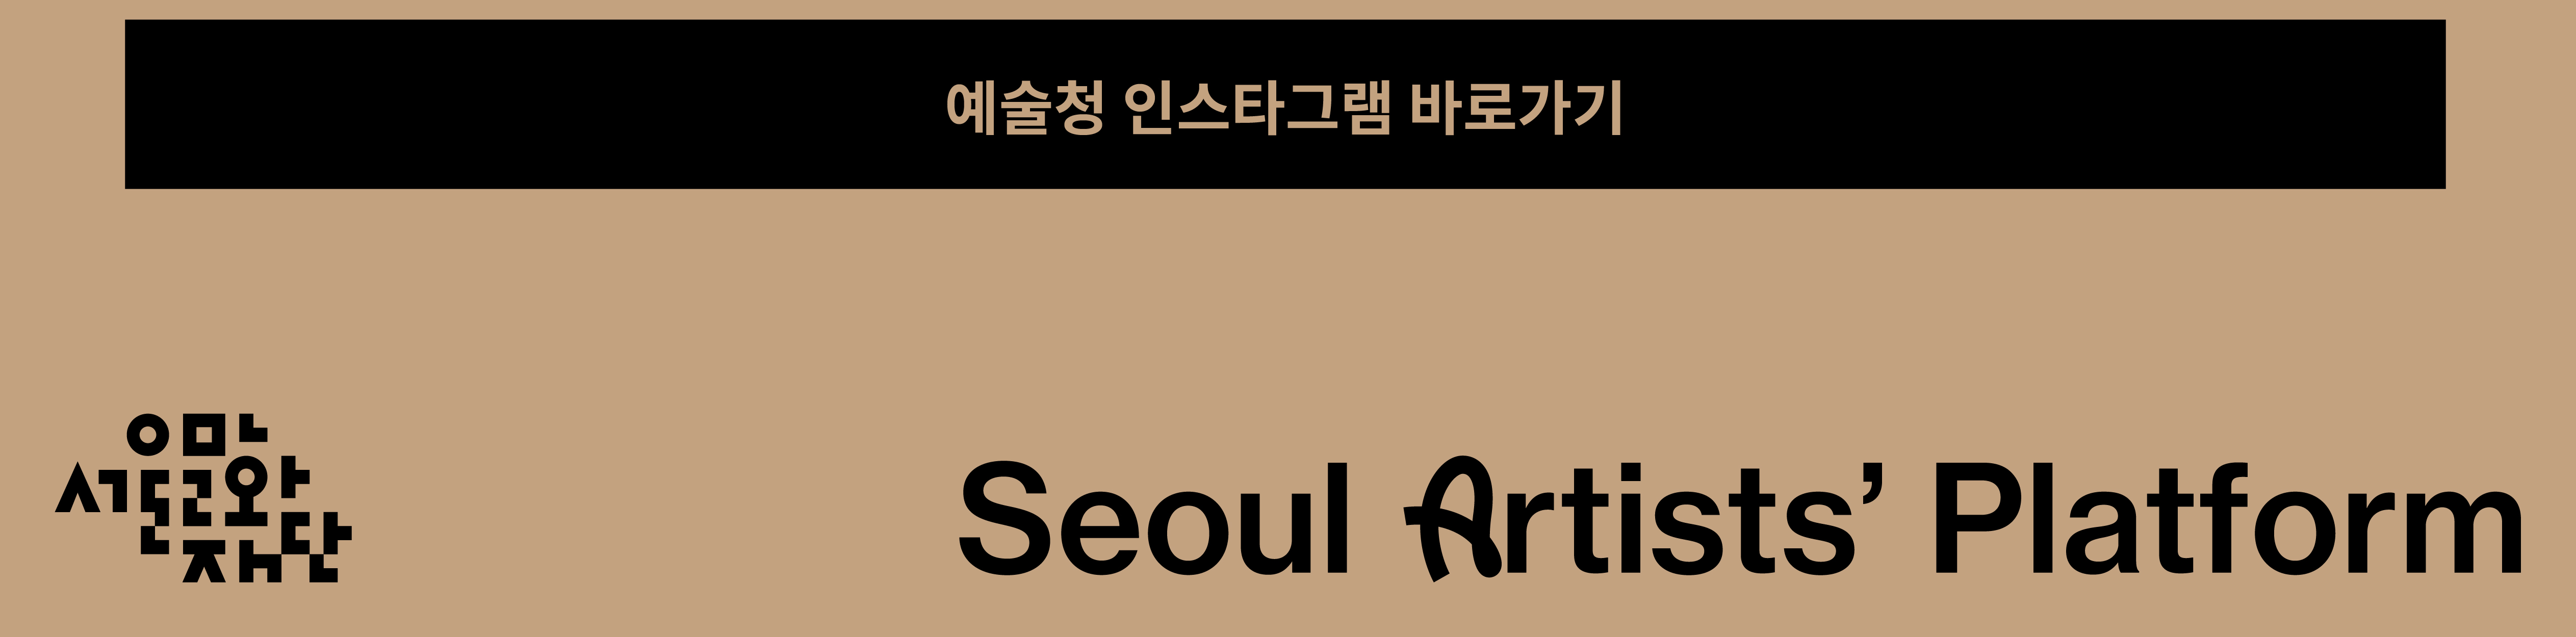 예술청 인스타그램 바로가기
Seoul Artists Platform